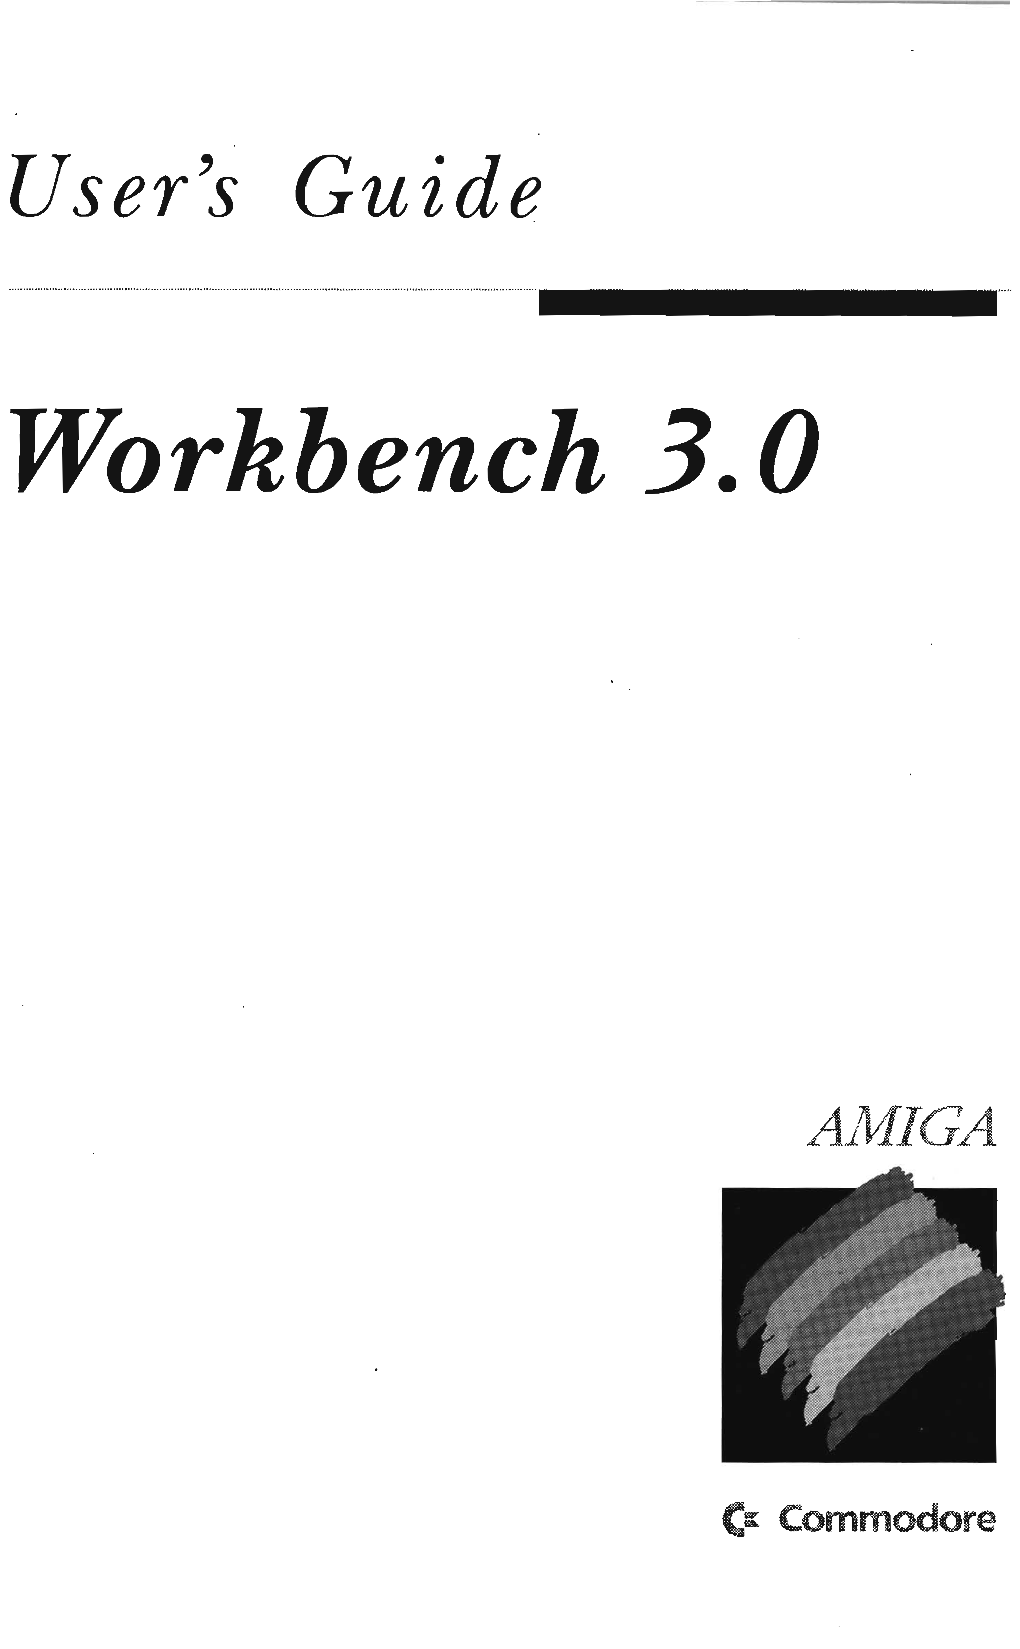 Workbench 3.0